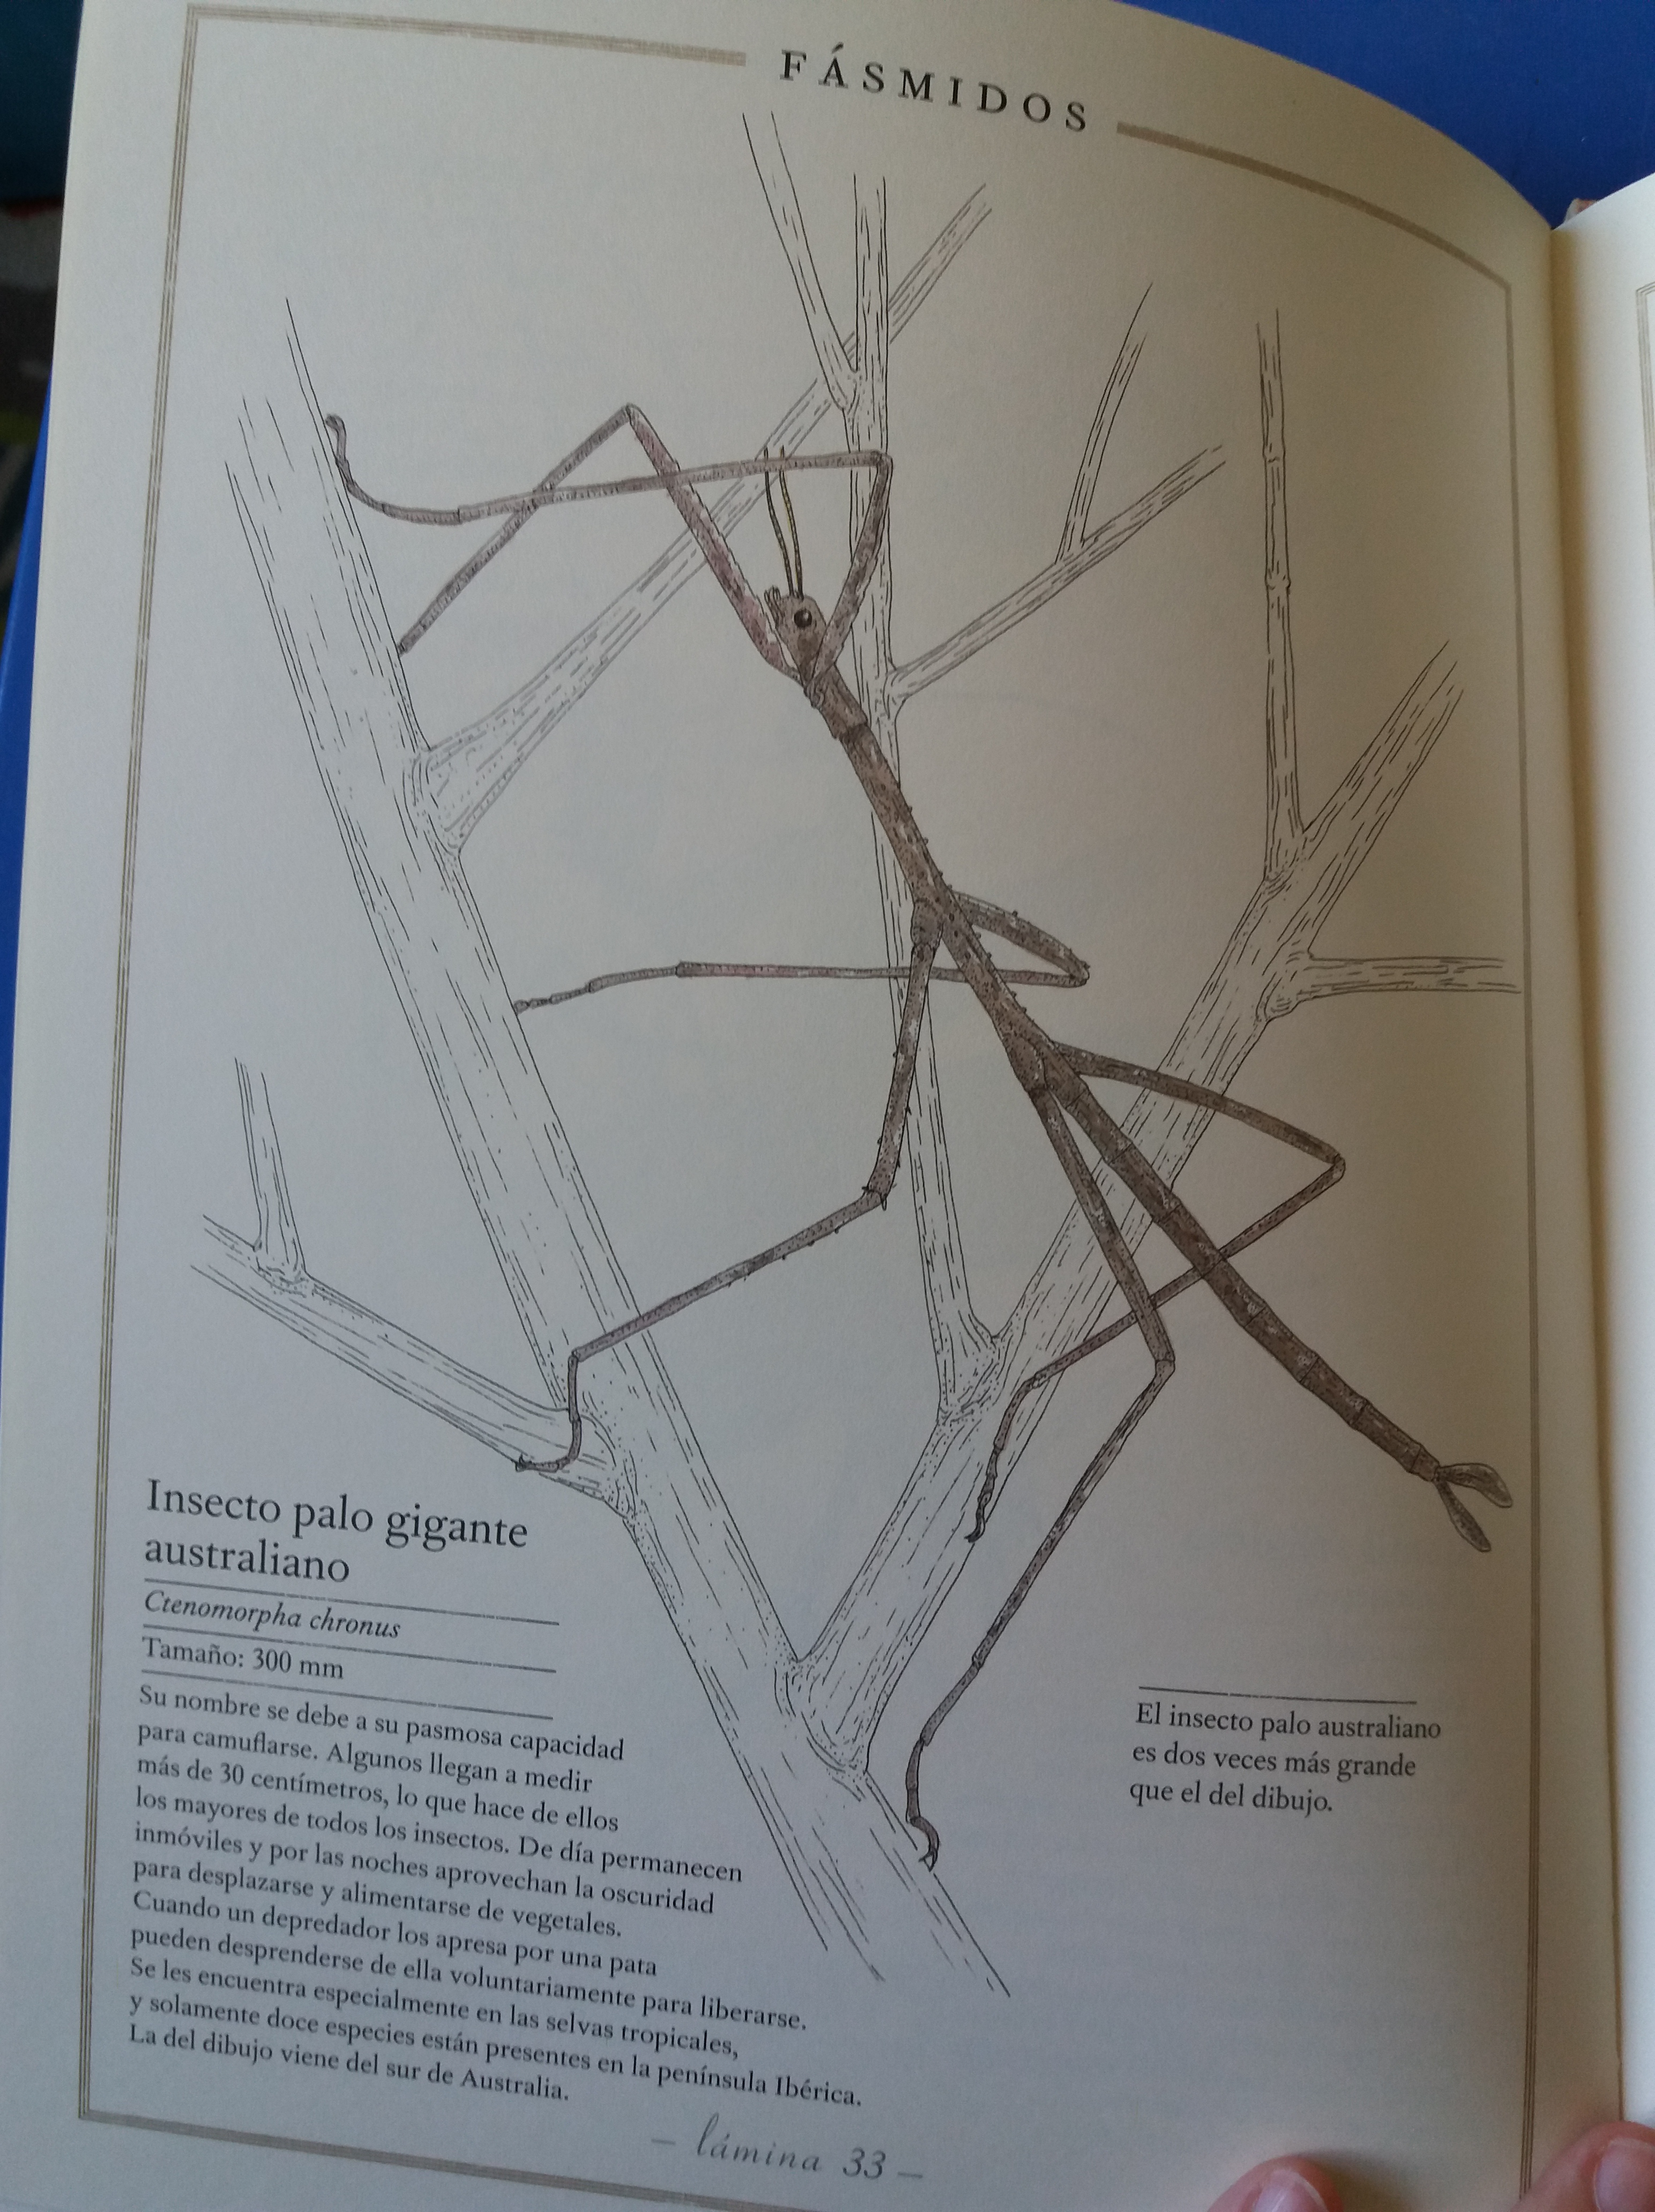 El Inventario Ilustrado de Insectos, un libro para amantes de la naturaleza  - Nuestros momentos Montessori